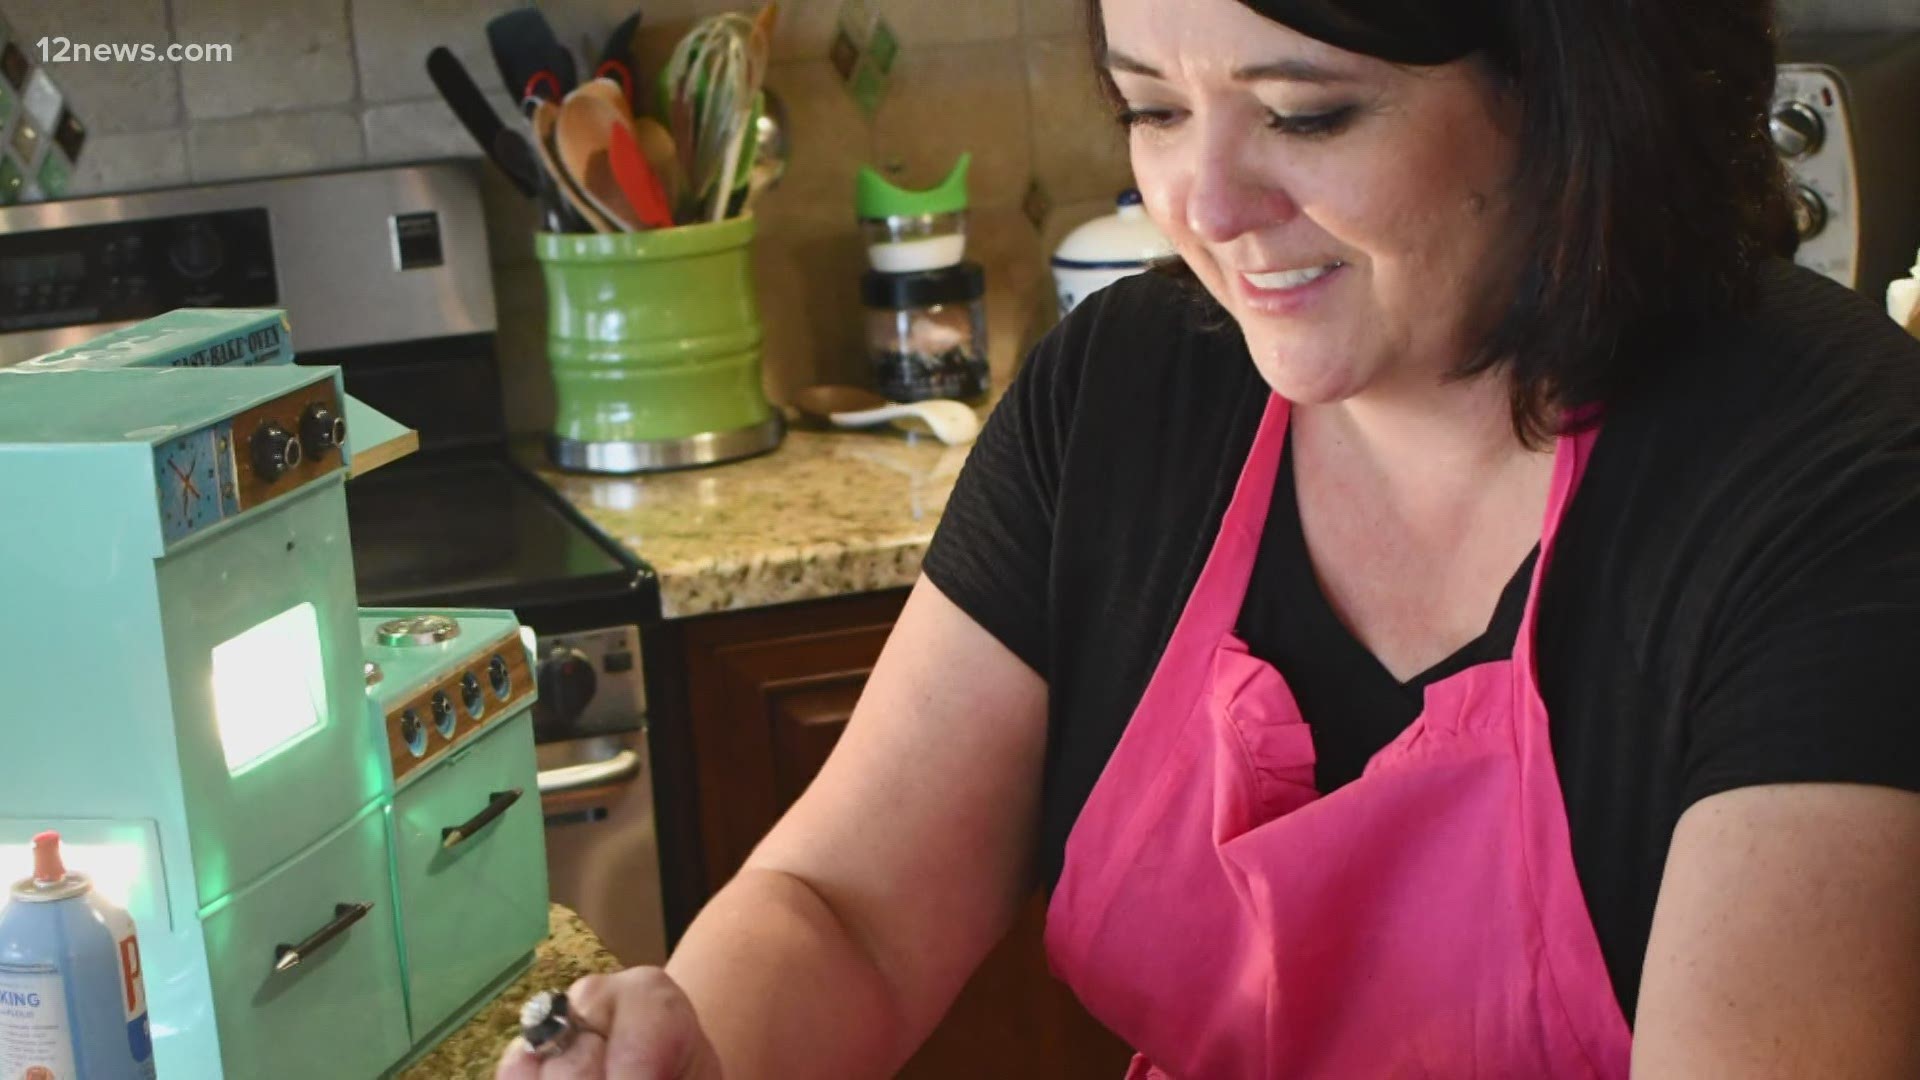 Meet Gina Favela, also known as the "Easy-Bake Oven Queen."